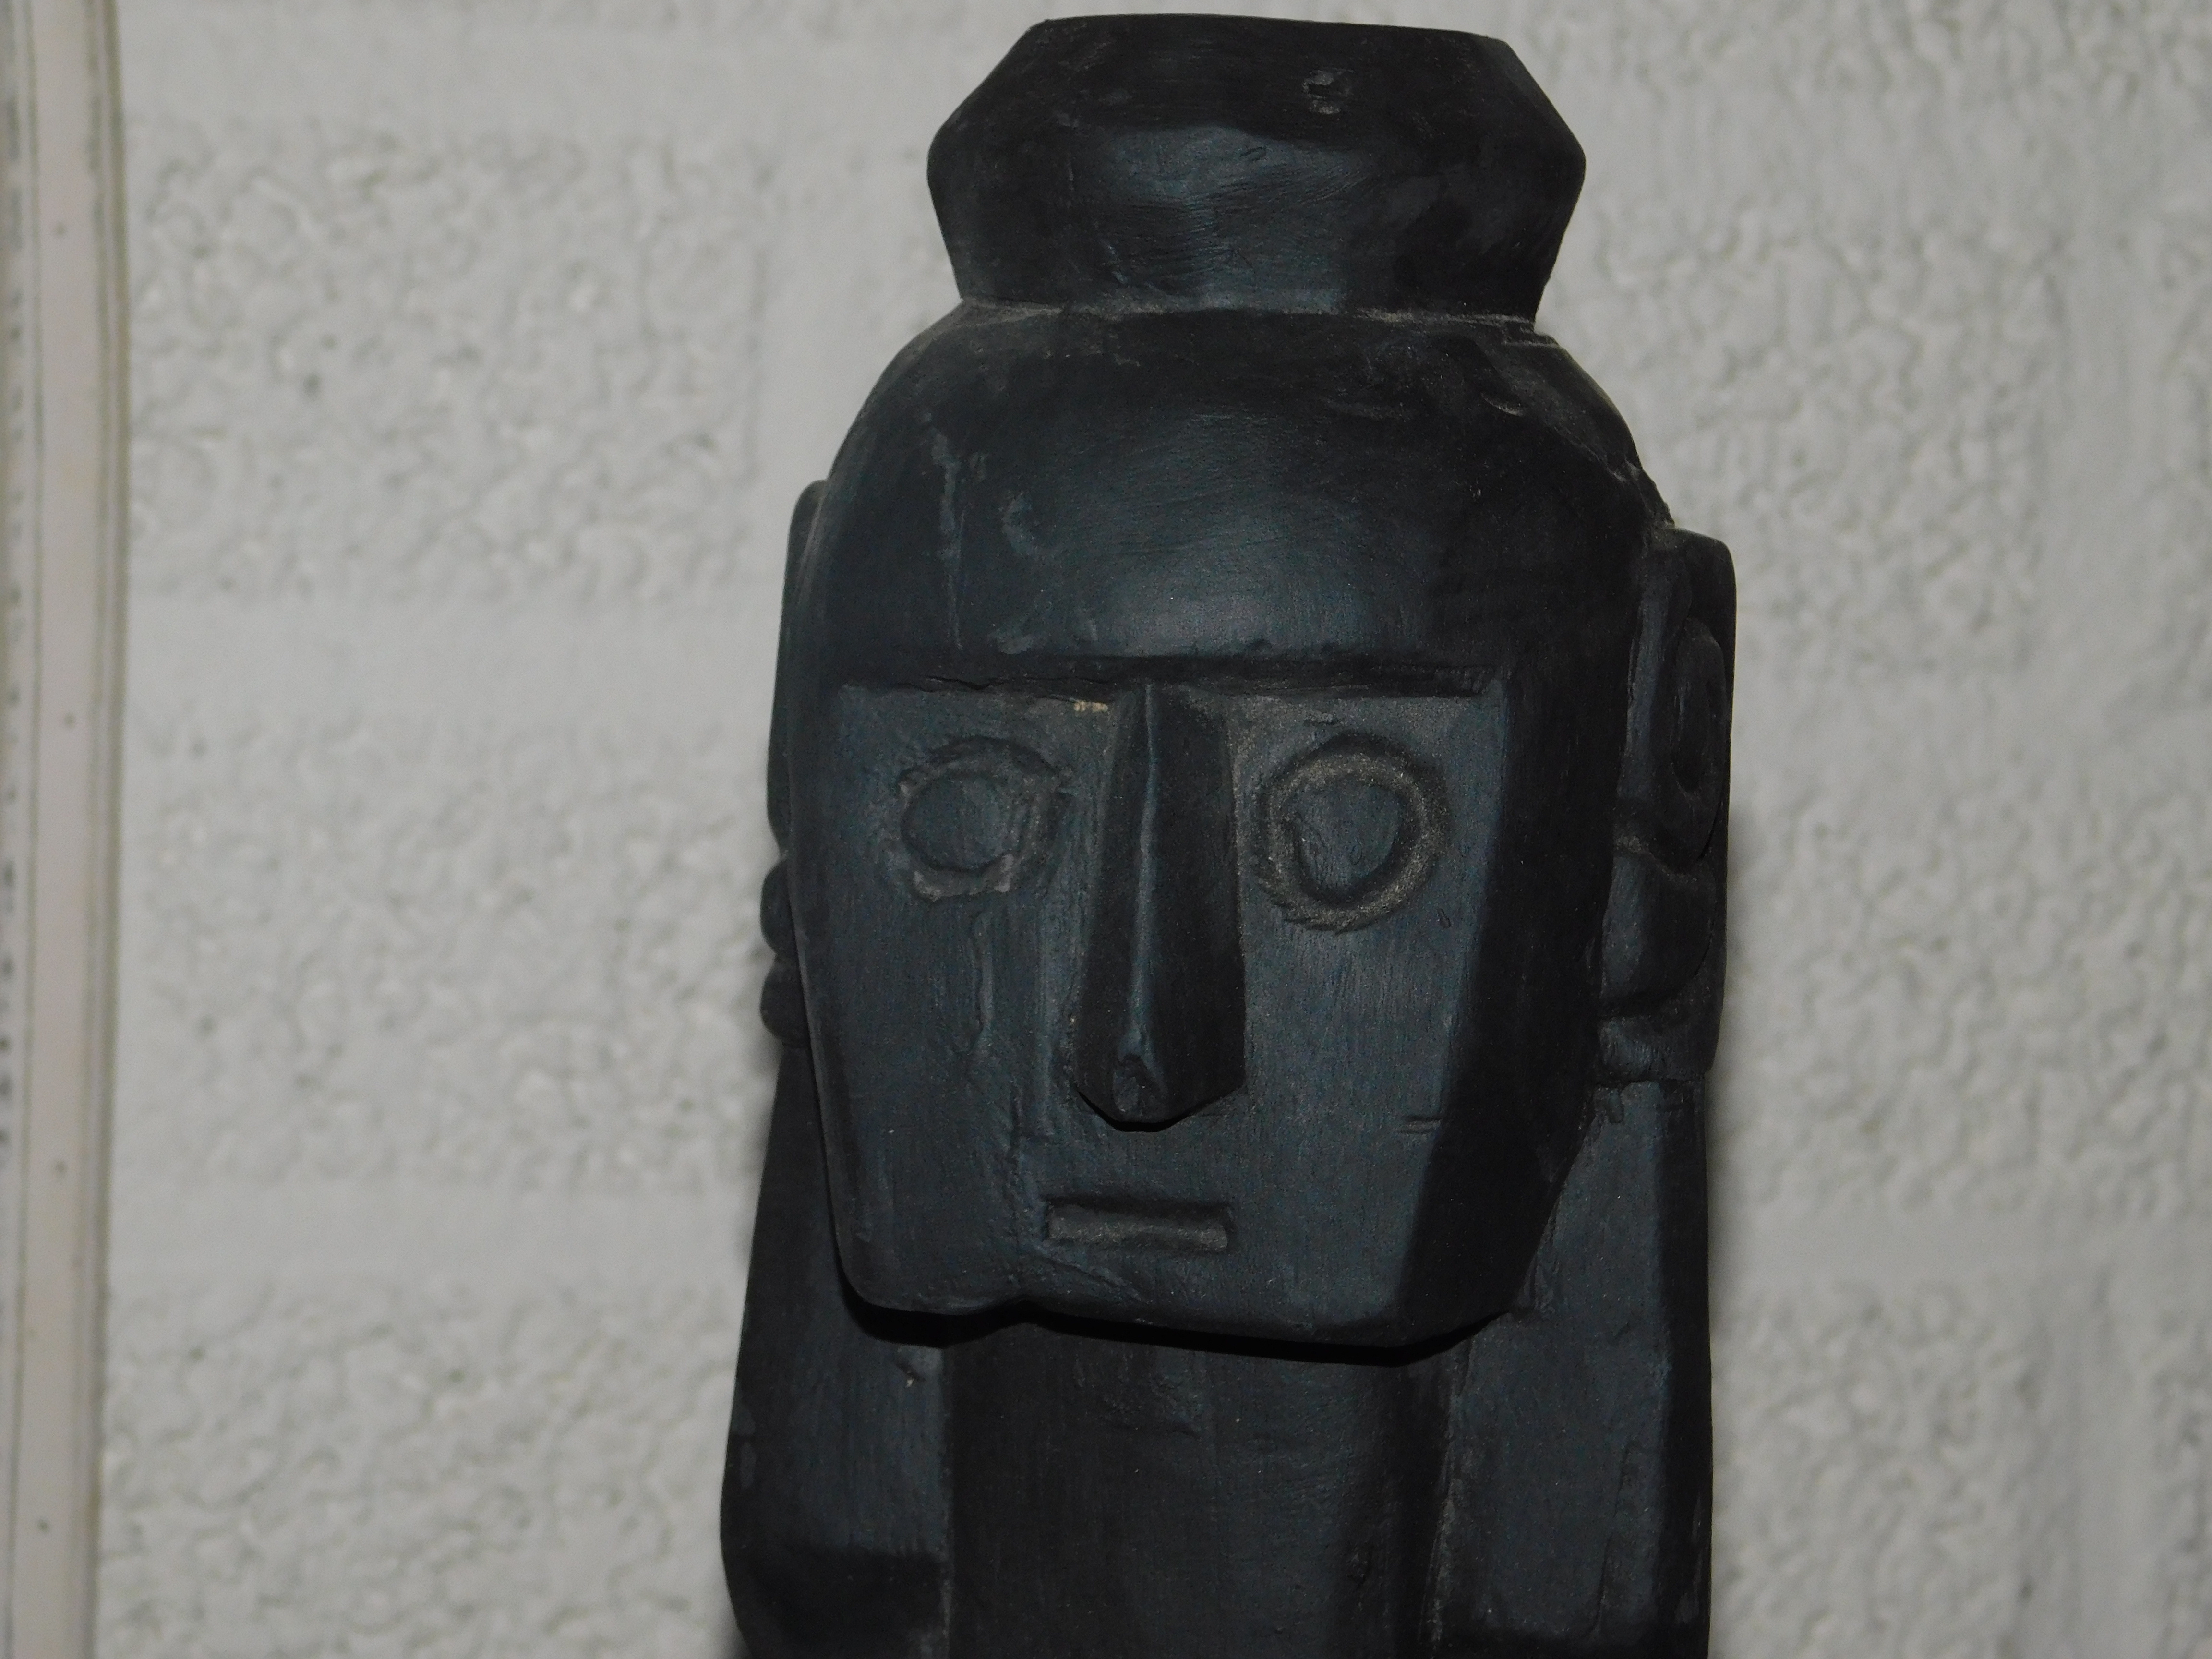 Satz von 4 handgeschnitzten Asmat-Skulpturen - Tibal Art Wood